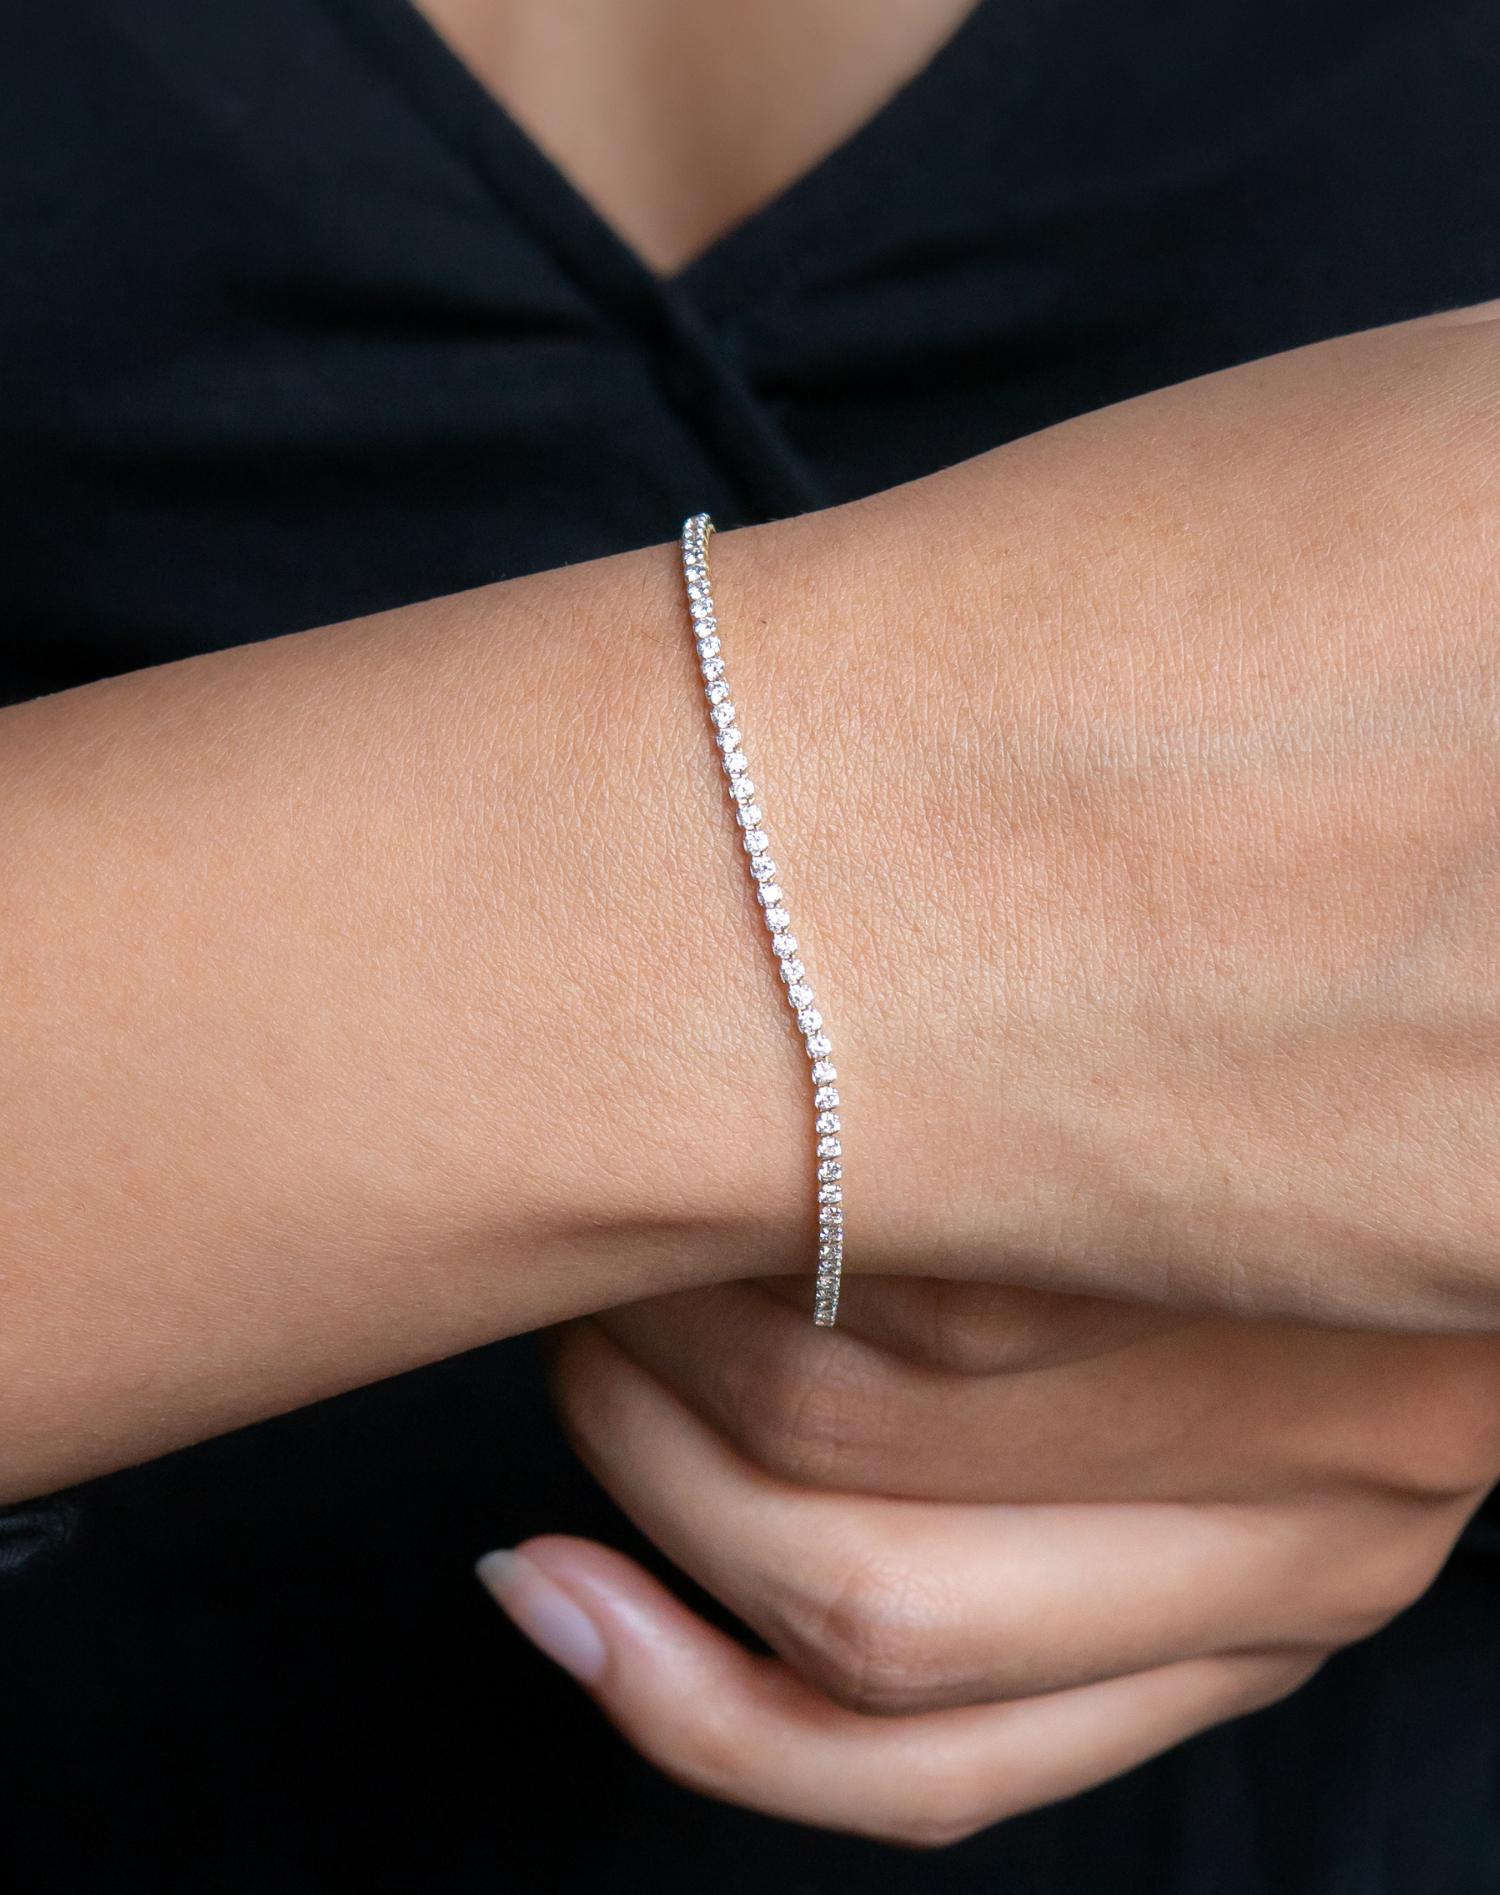 Diamond Bracelet Design for Women - JD SOLITAIRE